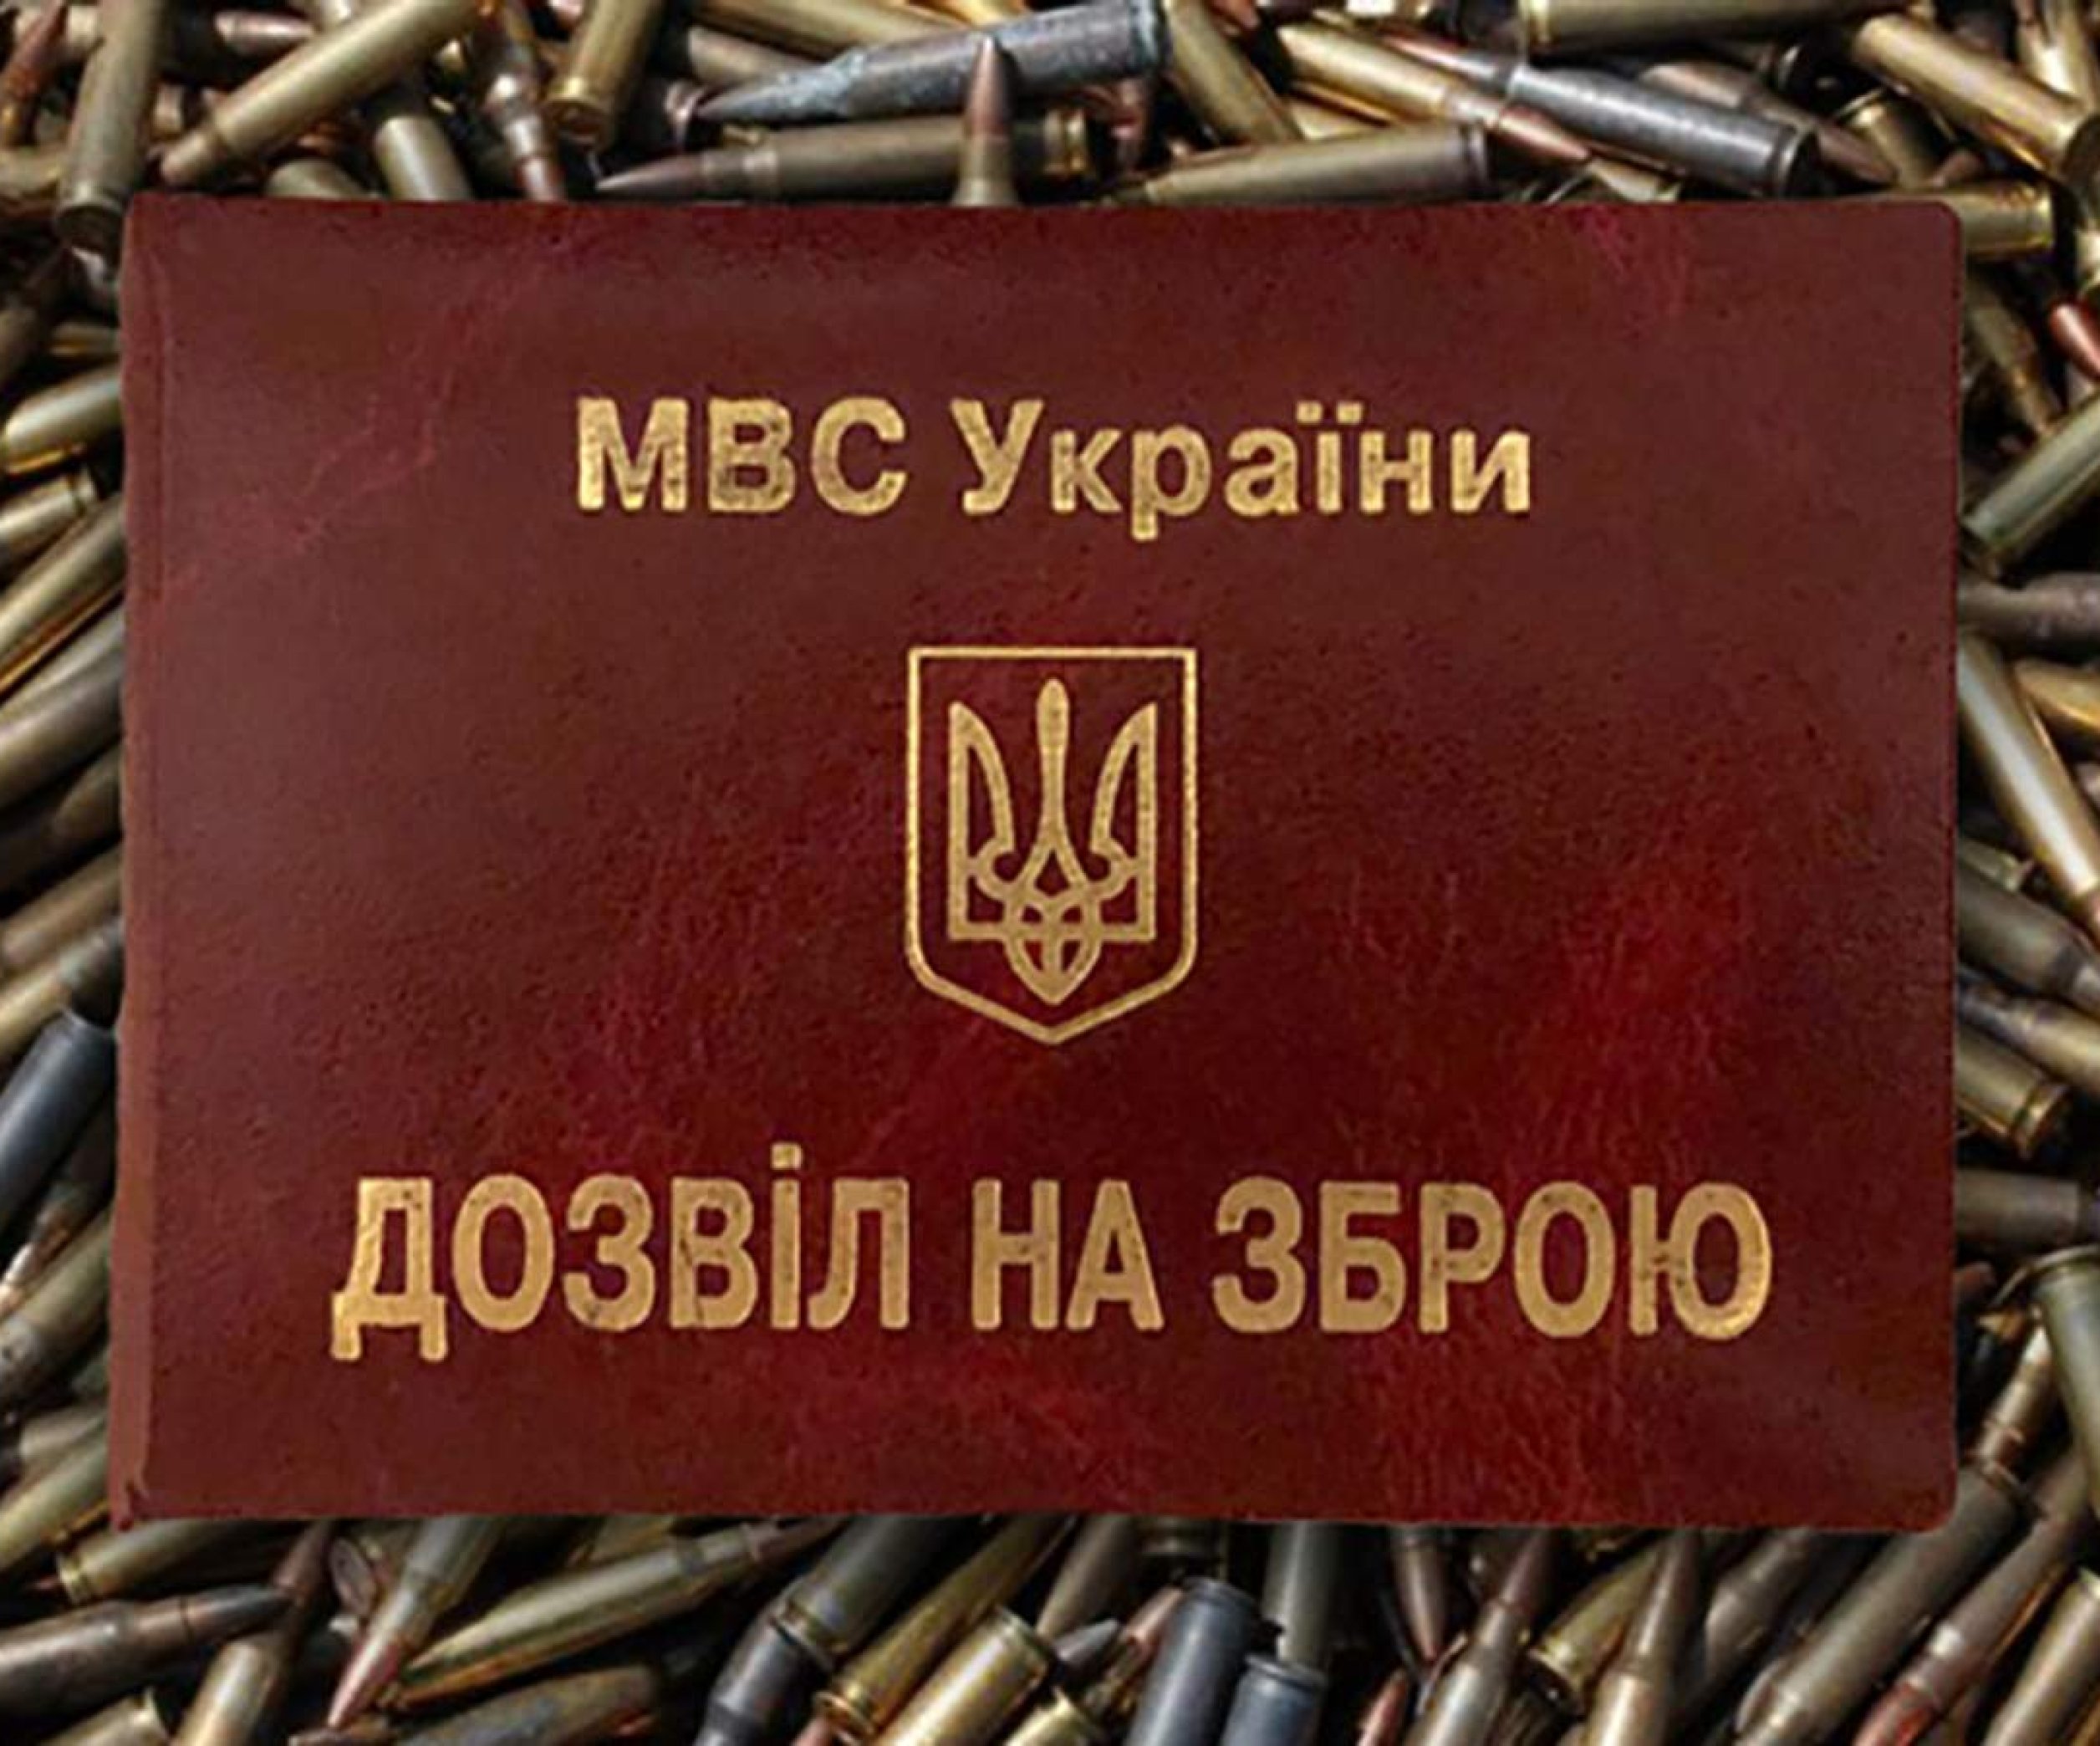 «Комсомолка» разбиралась, кто помогает неадекватным гражданам стать владельцами оружия самообороны.